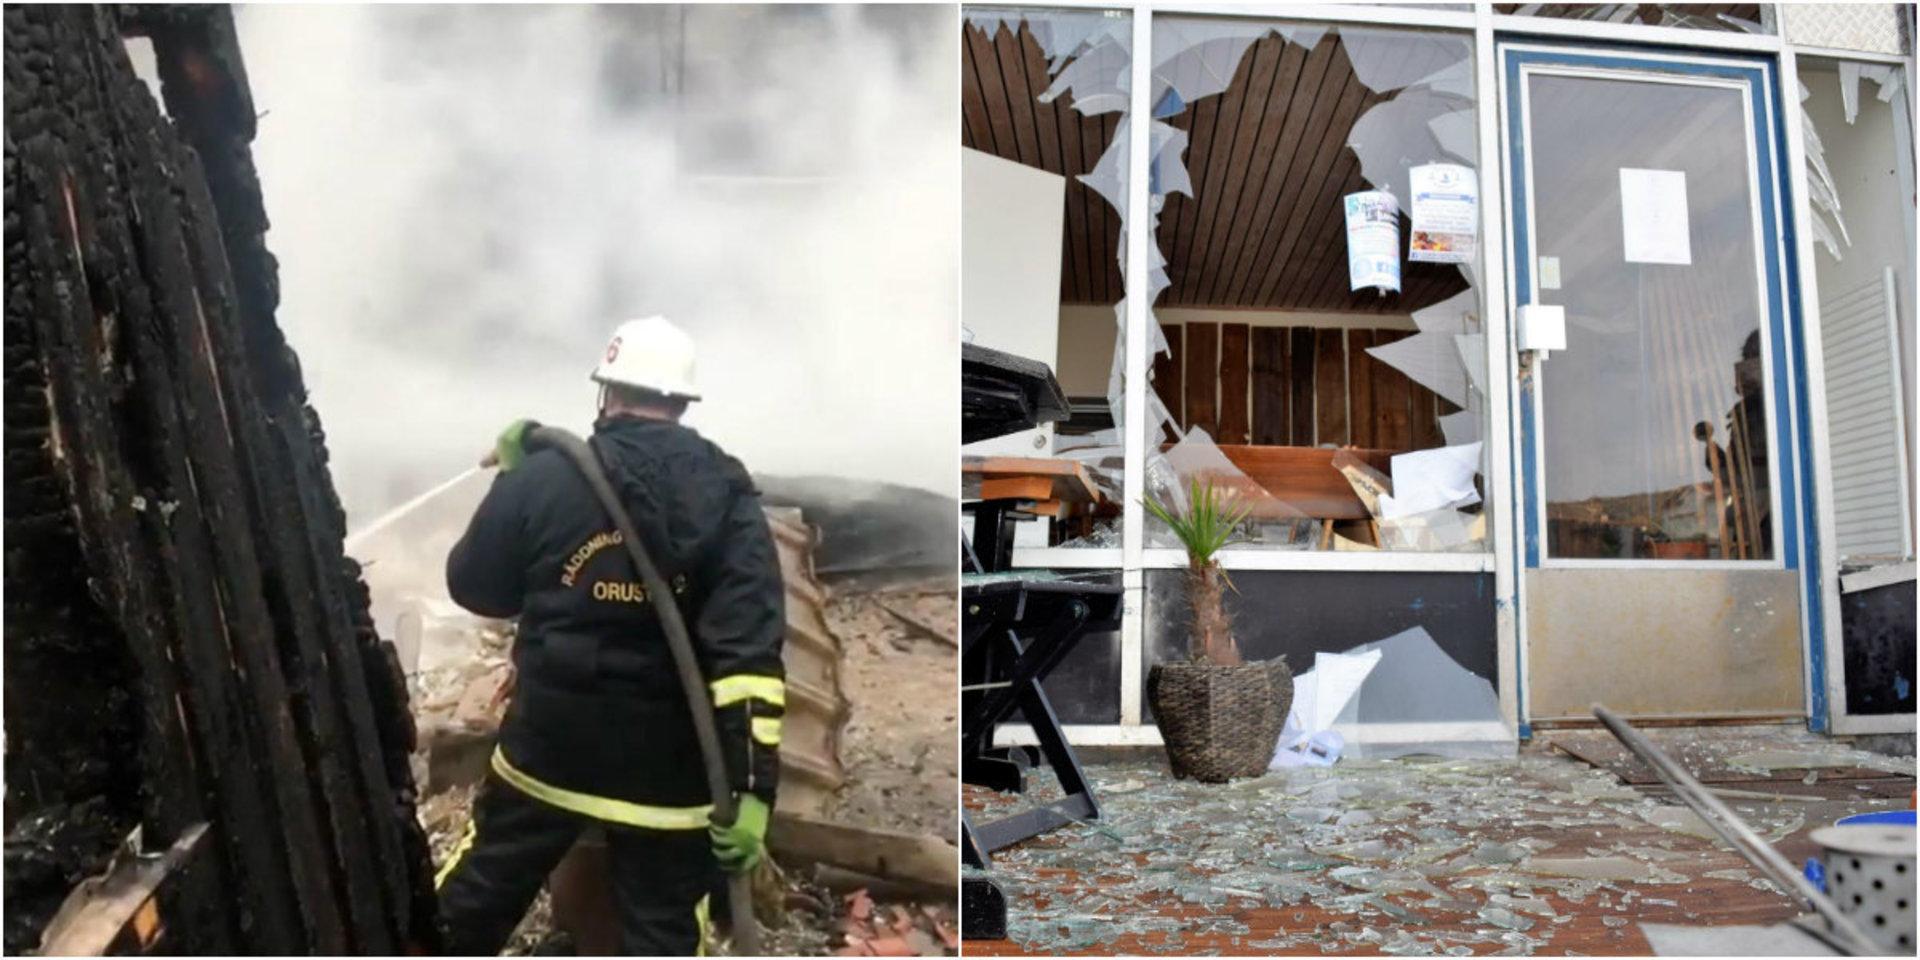 En restaurang på Stockens camping och en restaurang i Ellös har förstörts och polisen utreder brott.